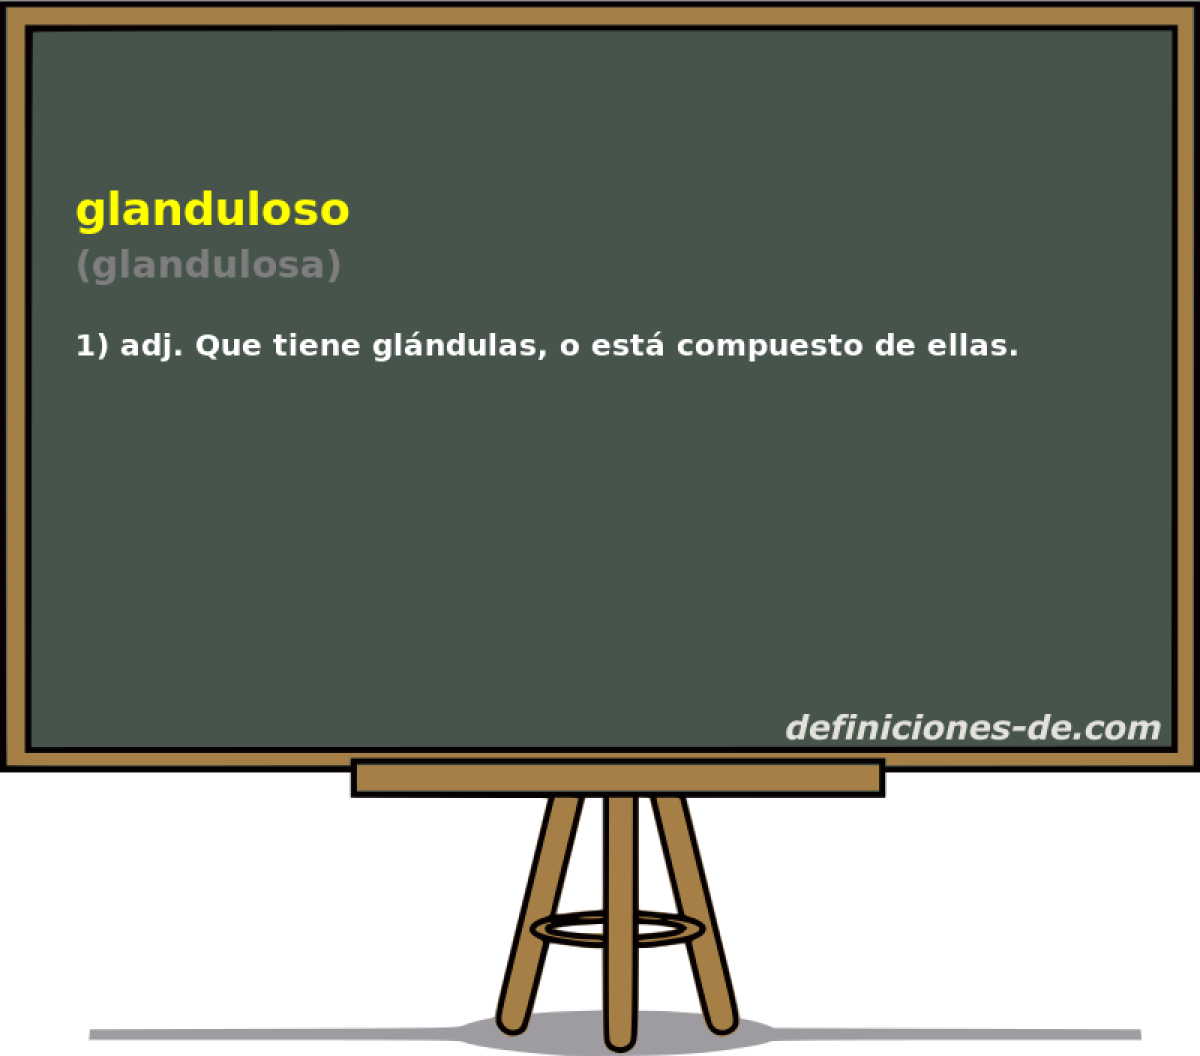 glanduloso (glandulosa)